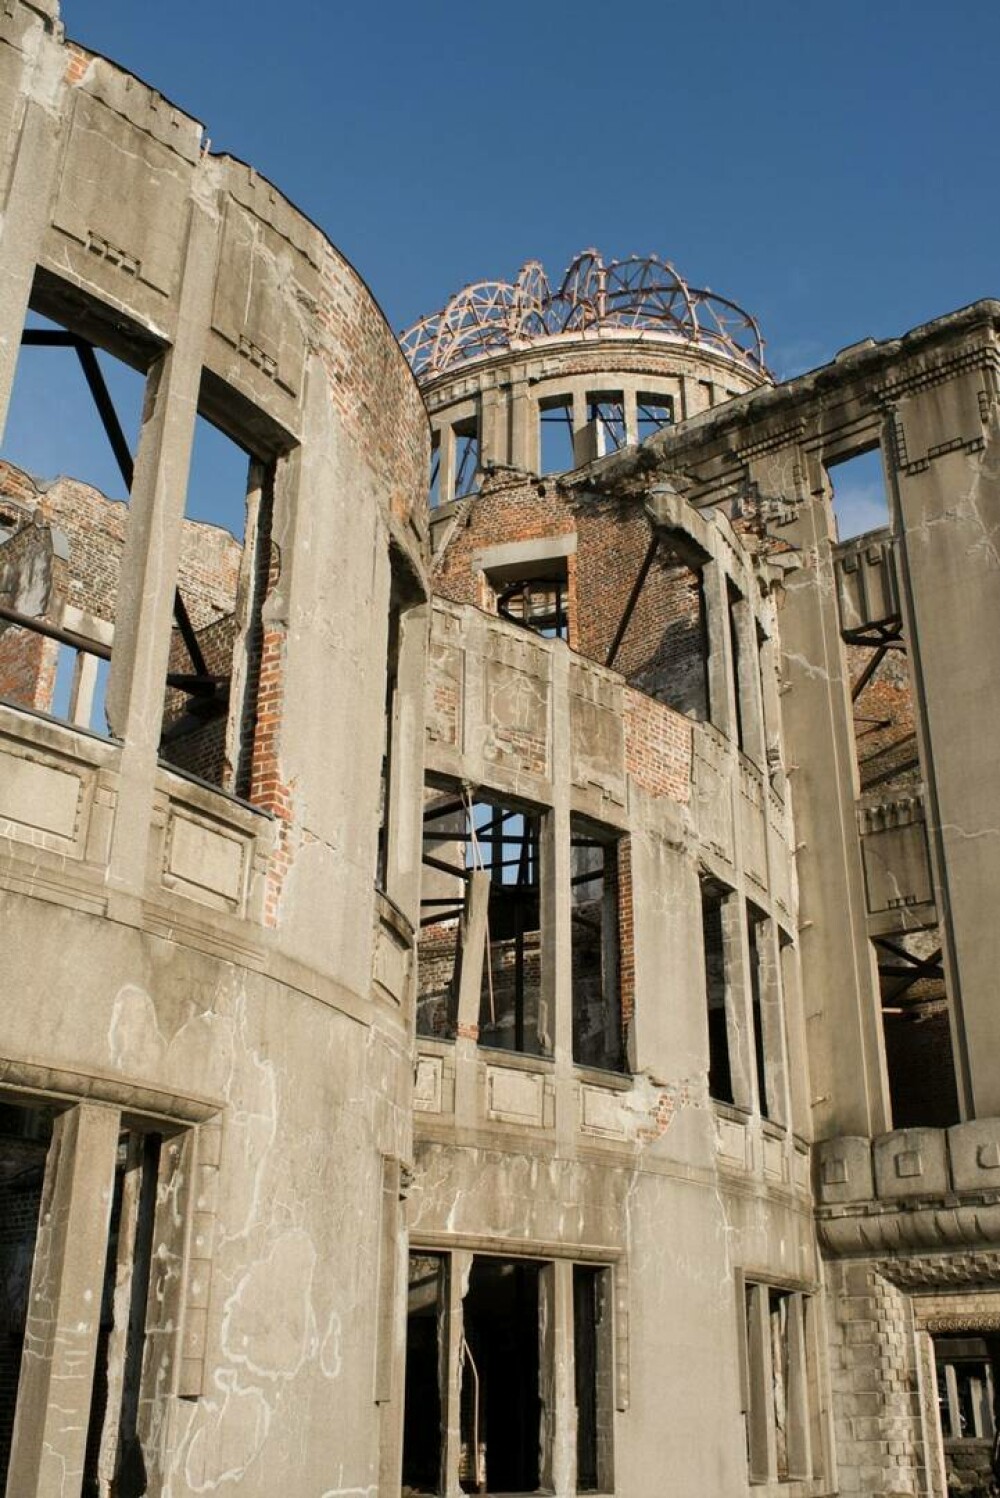 78 de ani de la bombardamentele atomice de la Hiroshima. Primarul îndeamnă eliminarea completă a armelor nucleare. FOTO - Imaginea 2